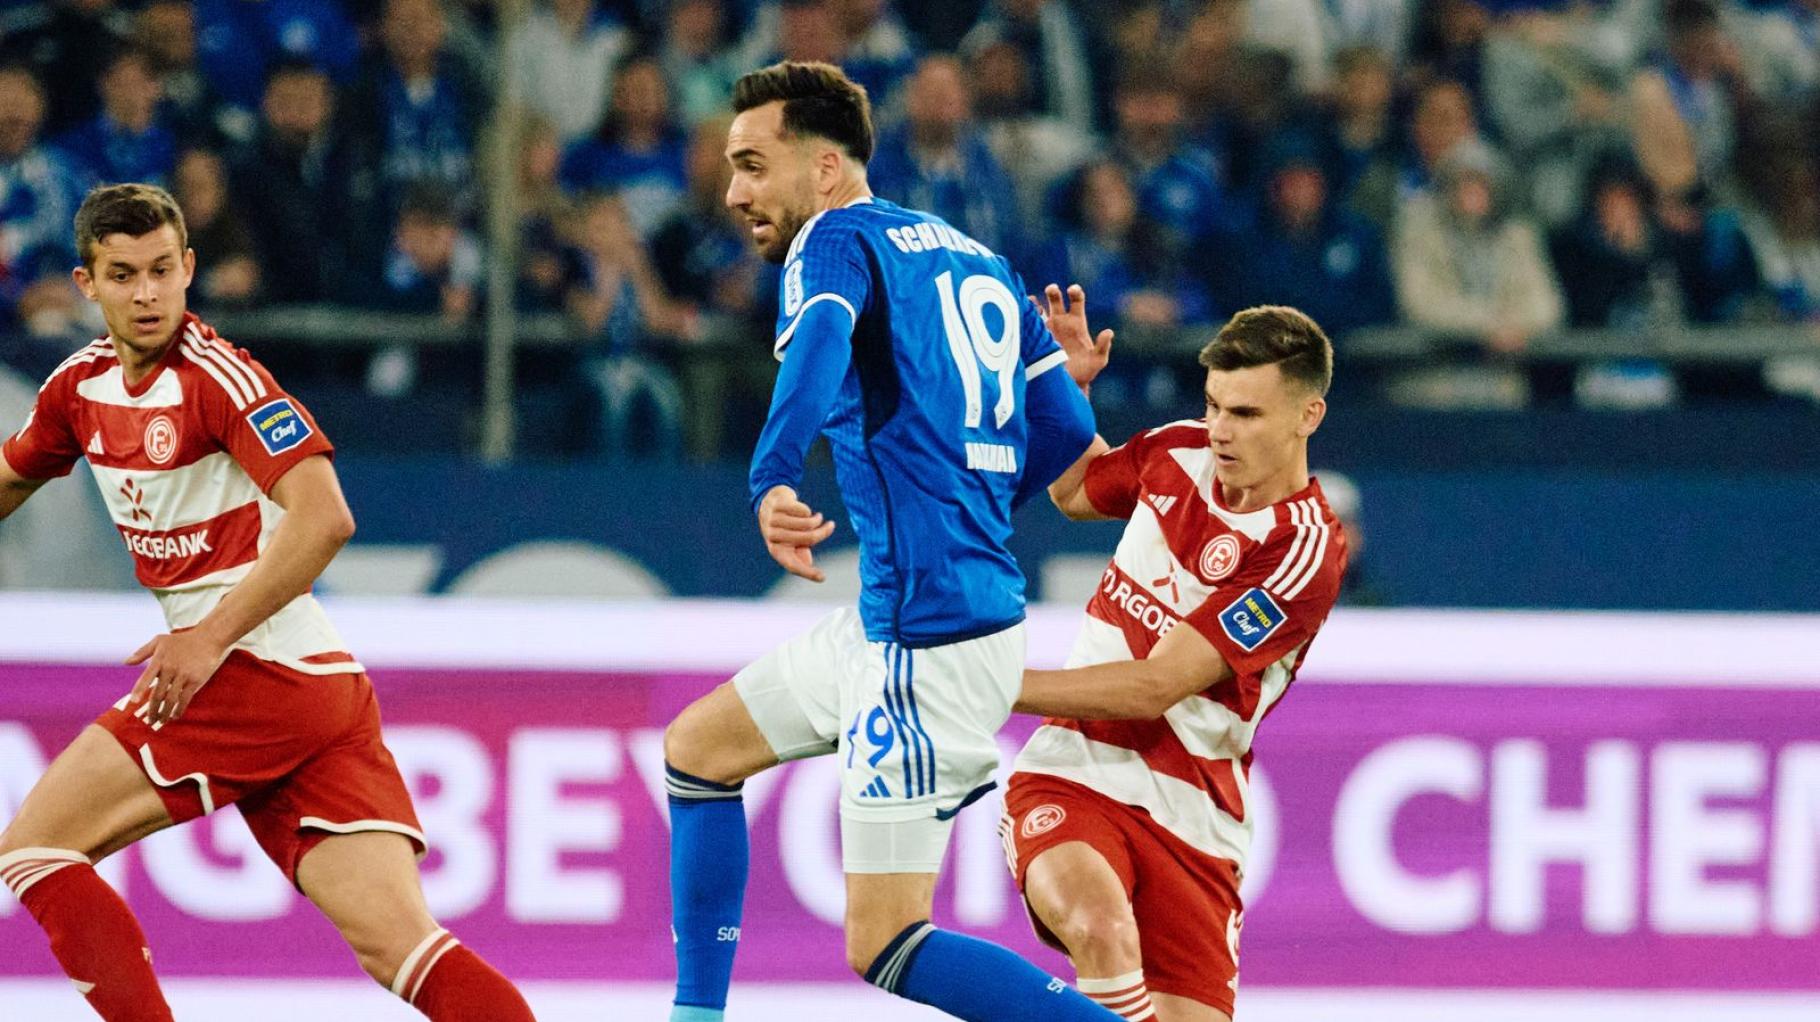 Fortuna Düsseldorf lässt Punkte auf Schalke liegen